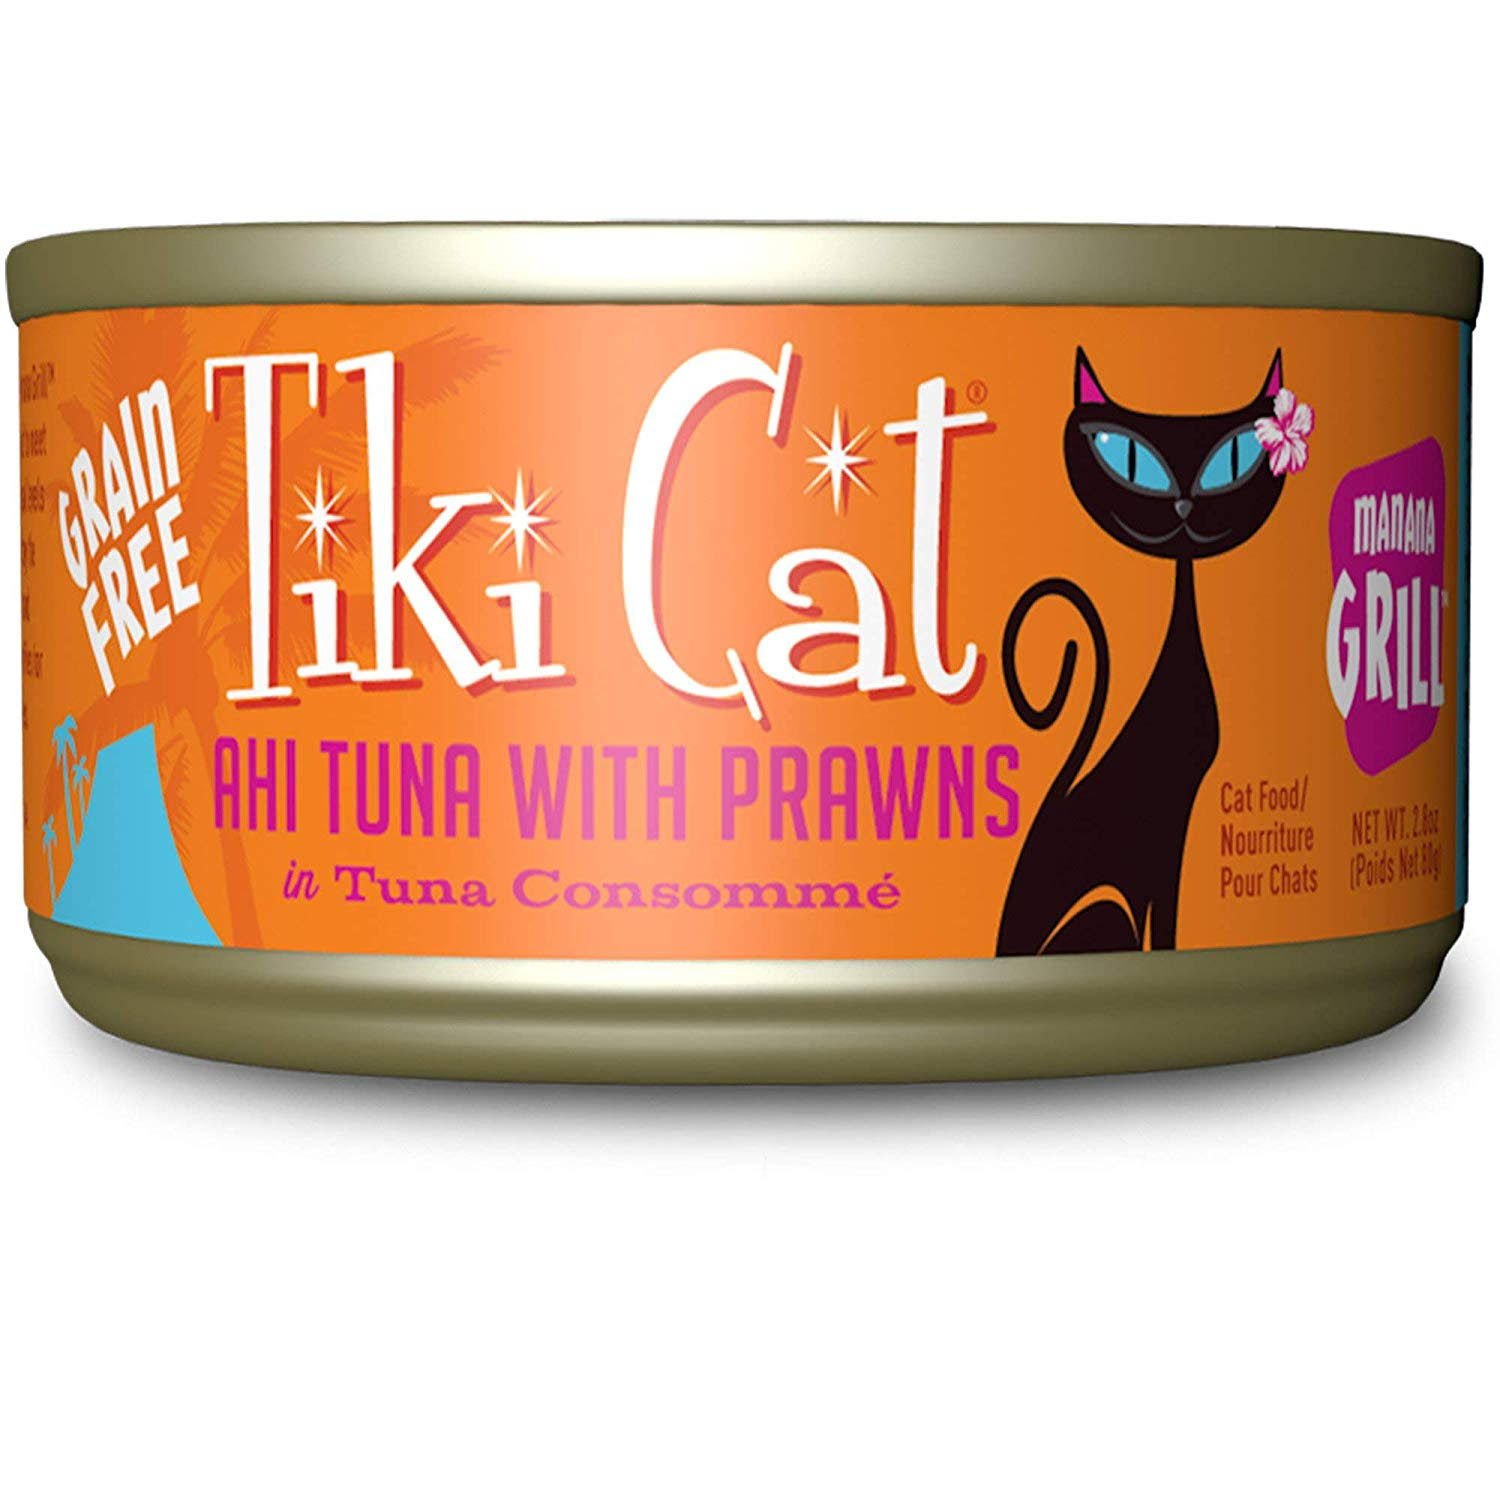 Tiki Cat Manana Grill Ahi Tuna Prawns Wet Cat Food, 2.8 oz.